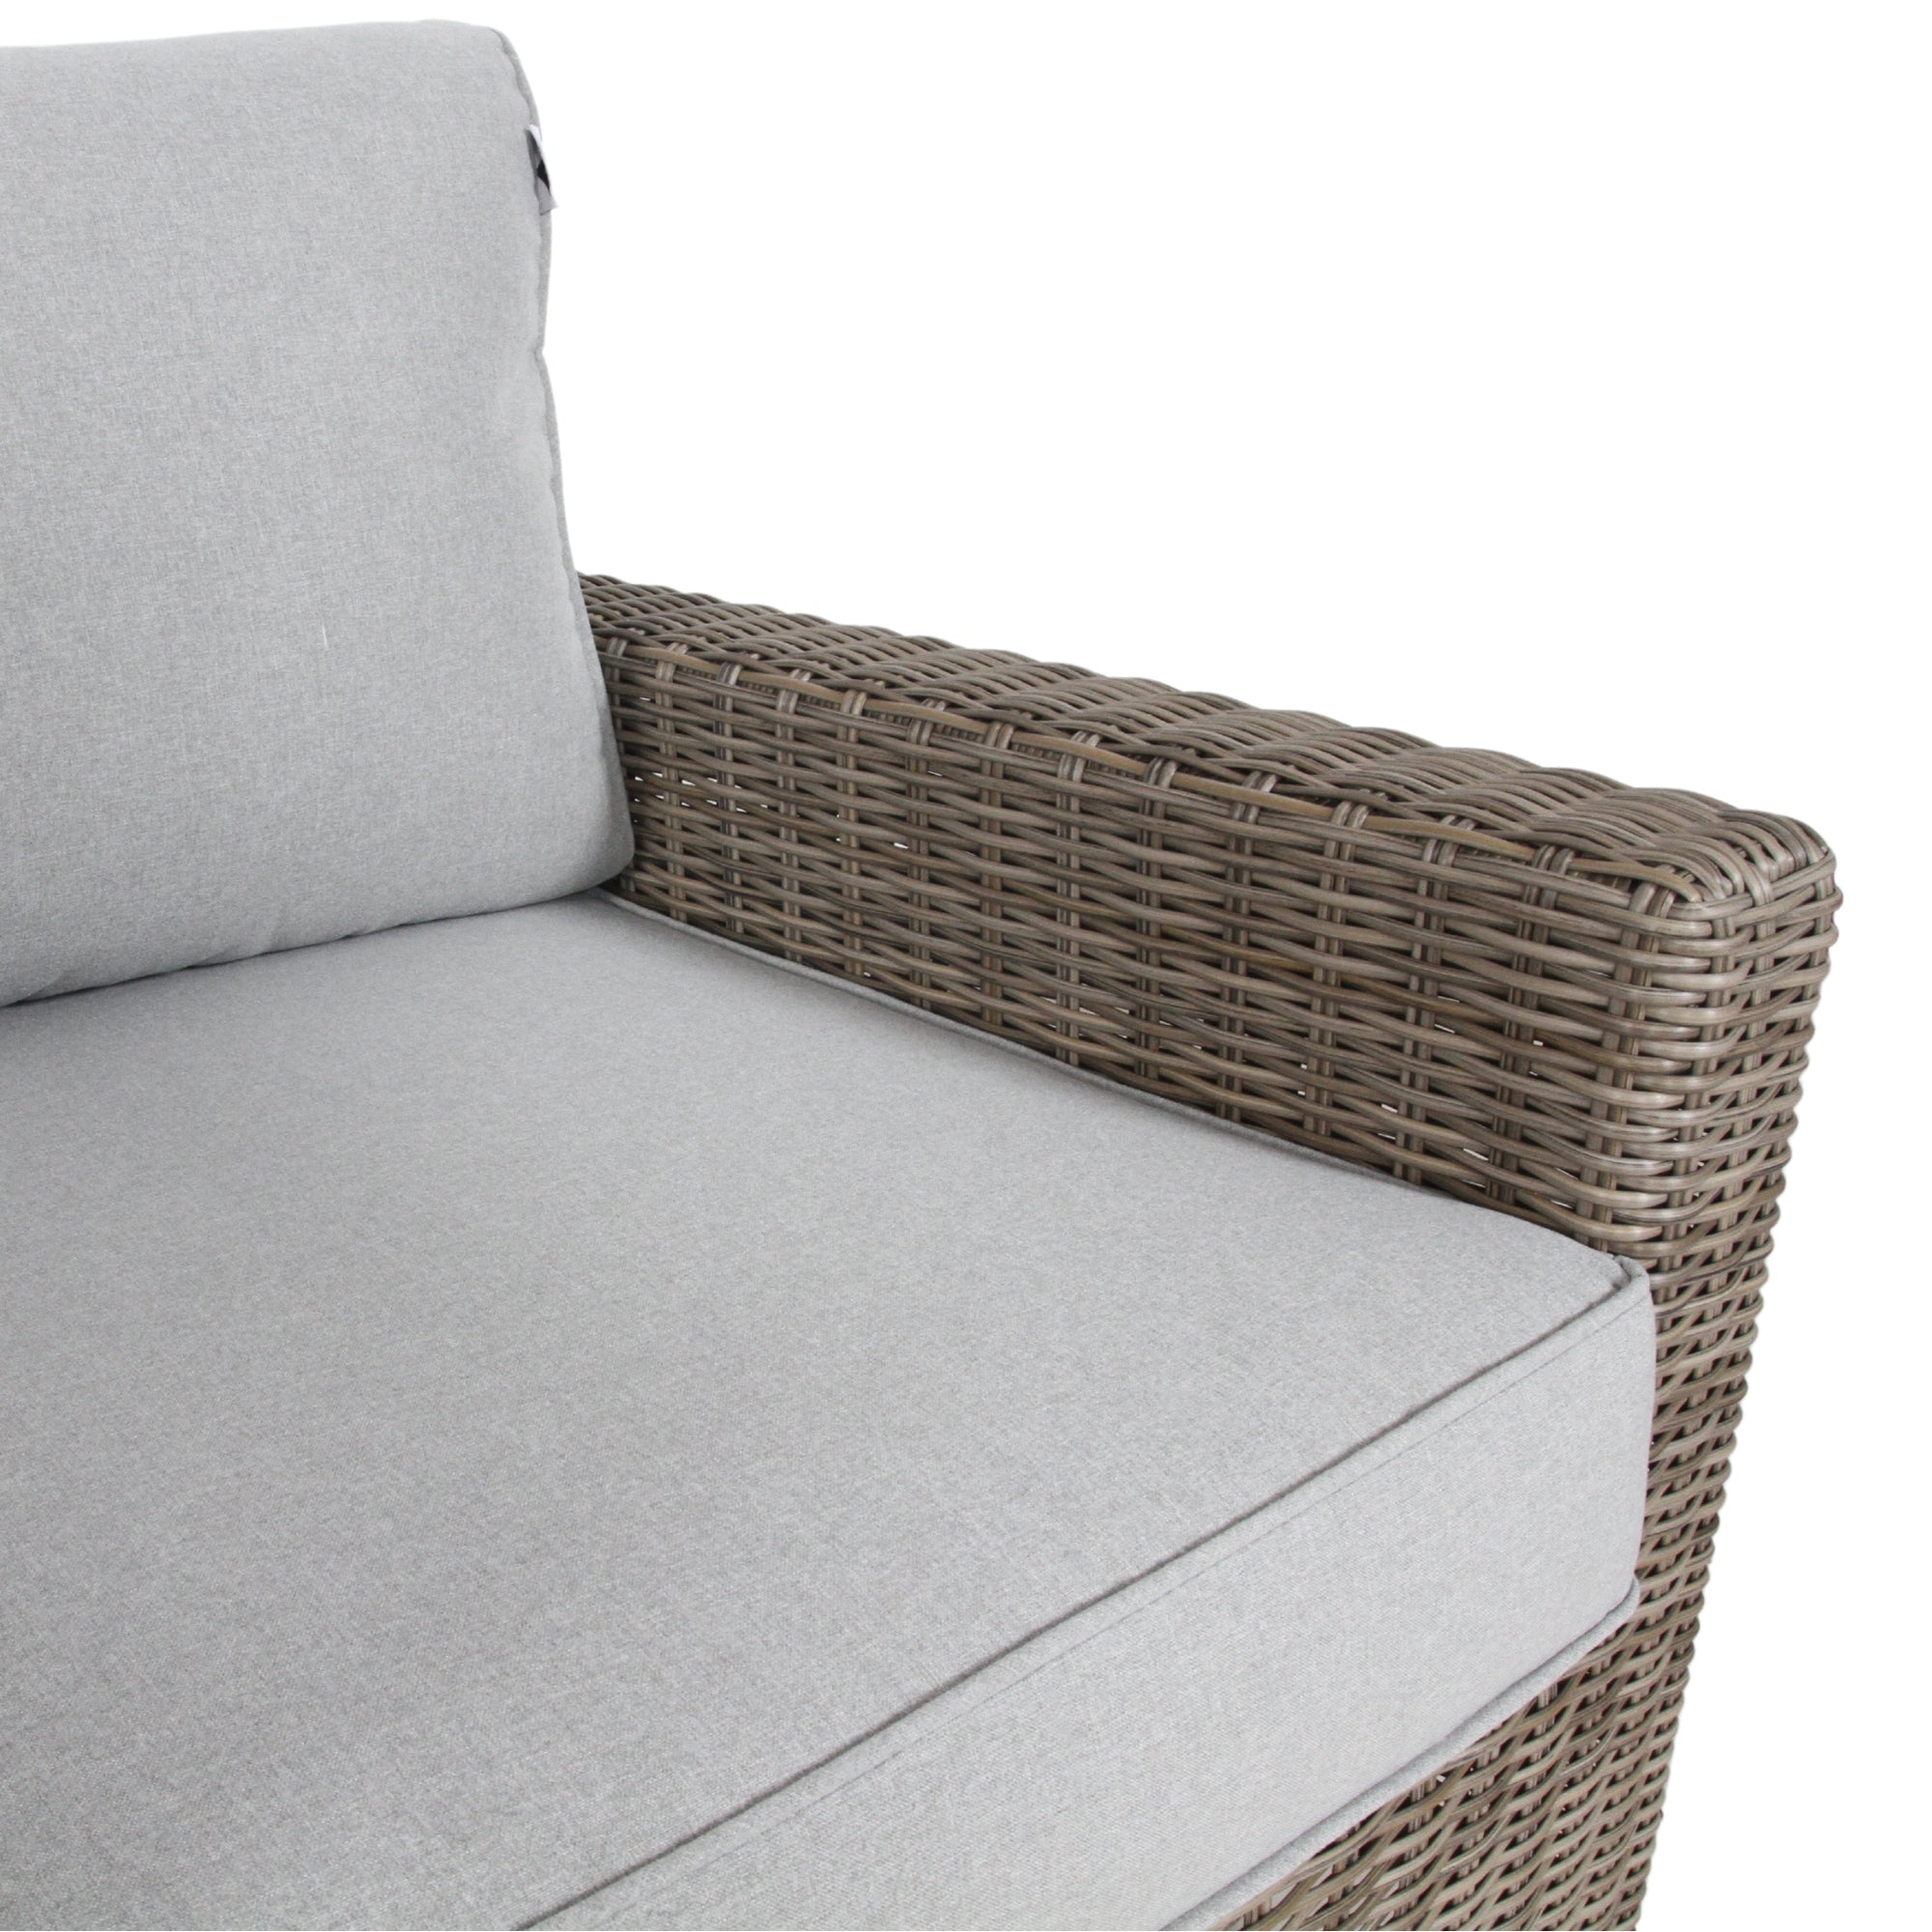 Weatherproof Wicker Rattan Outdoor Sofa Chair - 1 Seater